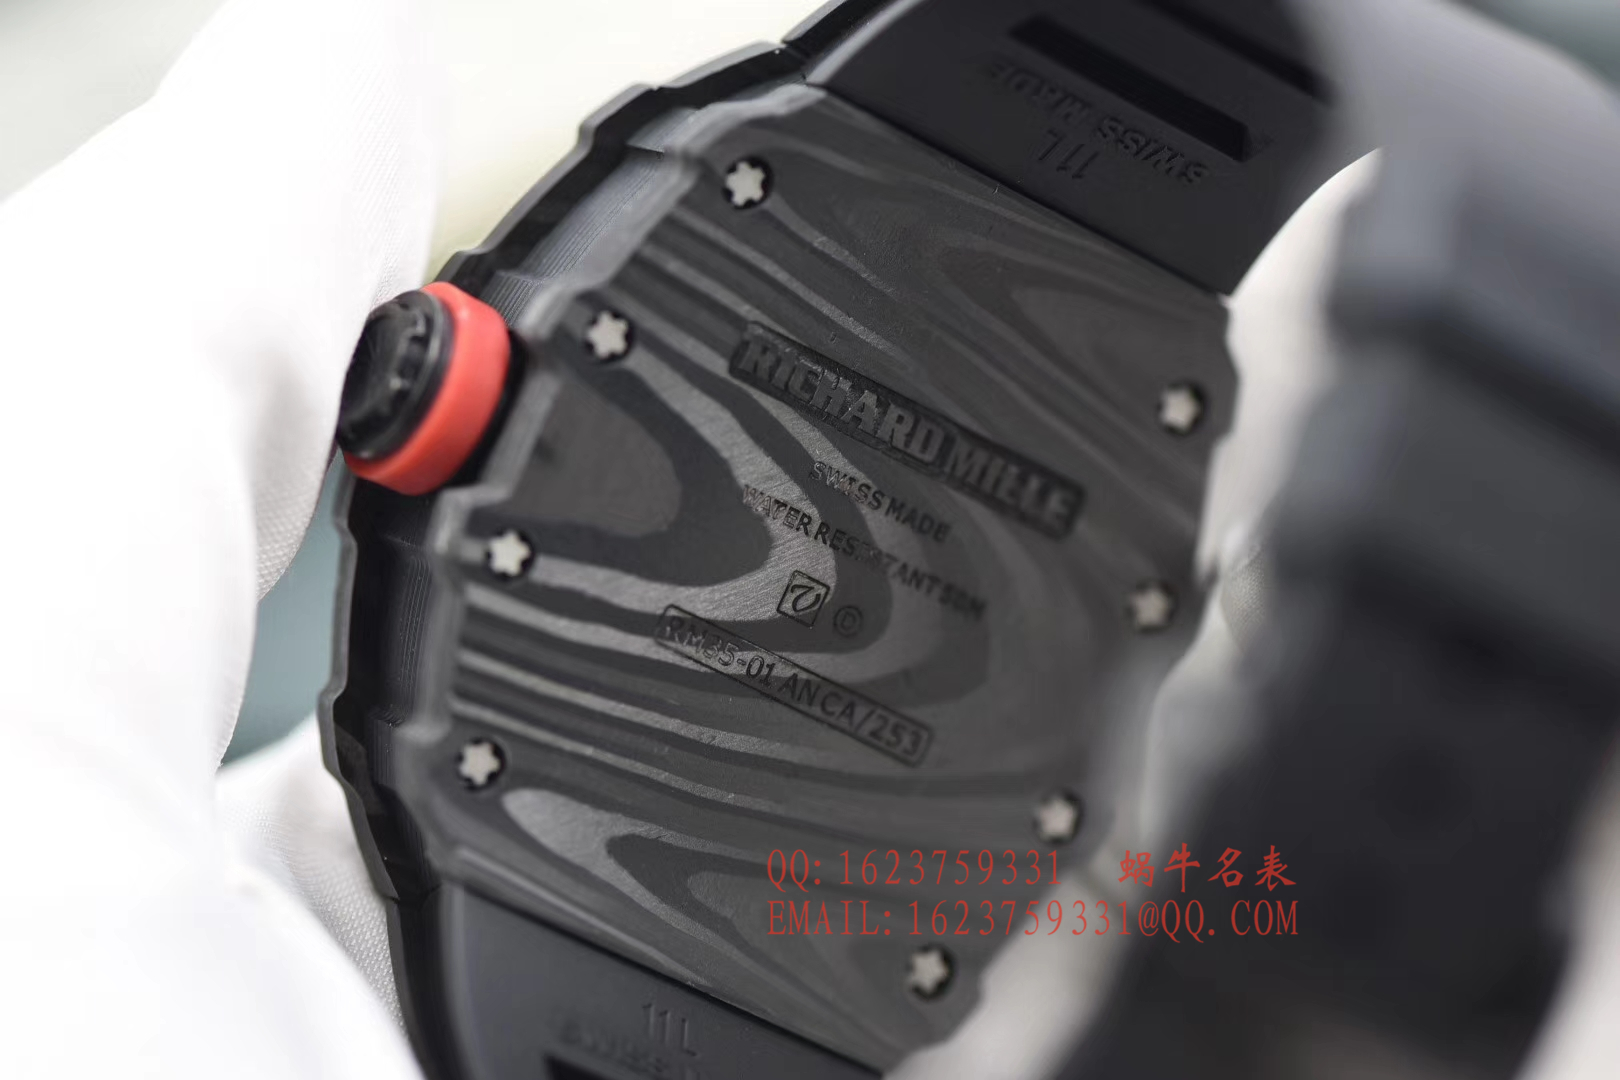 【独家视频评测KV一比一超A高仿手表】理查德米勒男士系列RM 35-01 RAFAEL NADAL腕表 